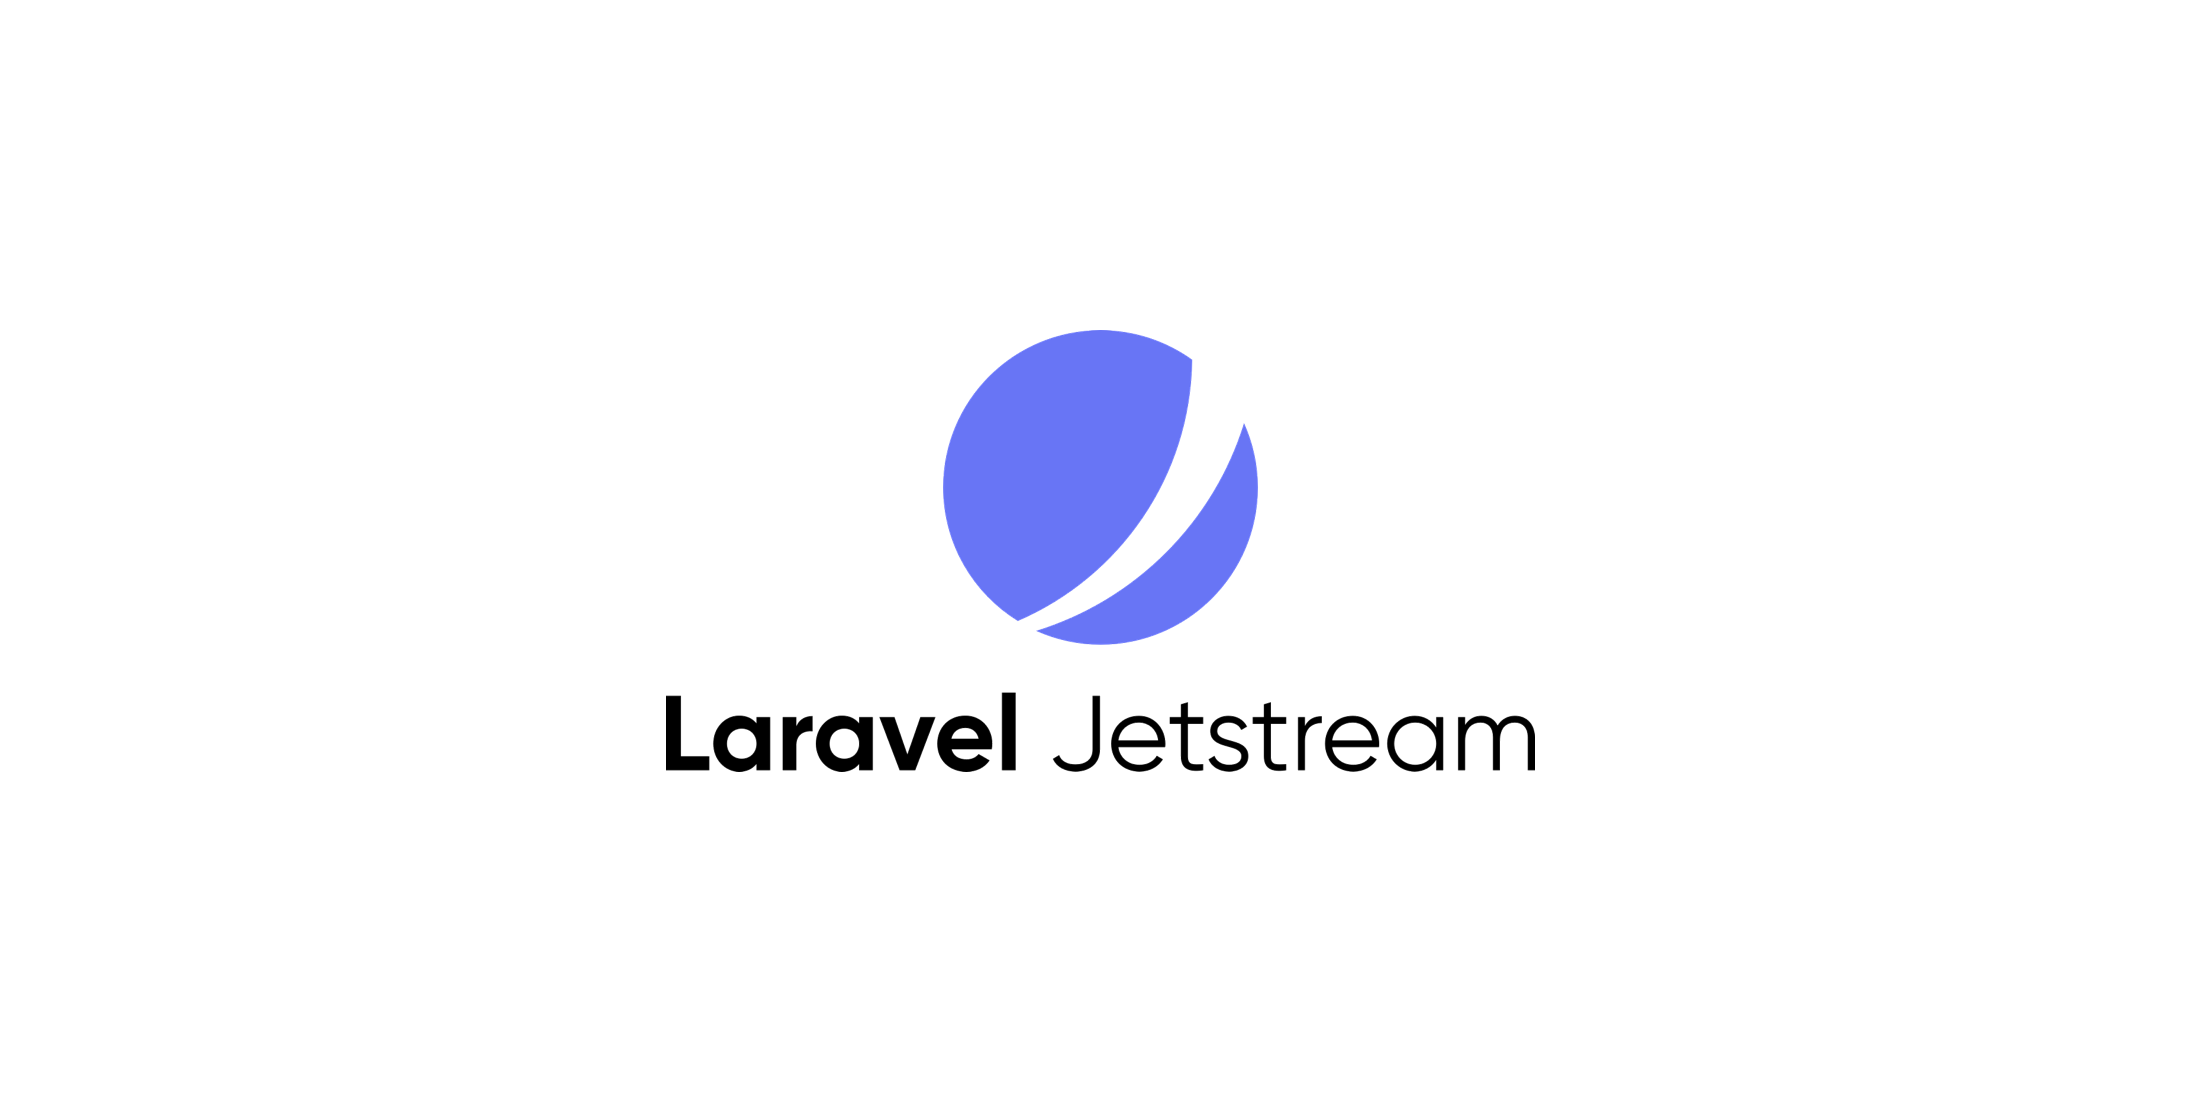 Laravel Jetstream: Dodaj CRUD z pozwoleniem na przestrzeń